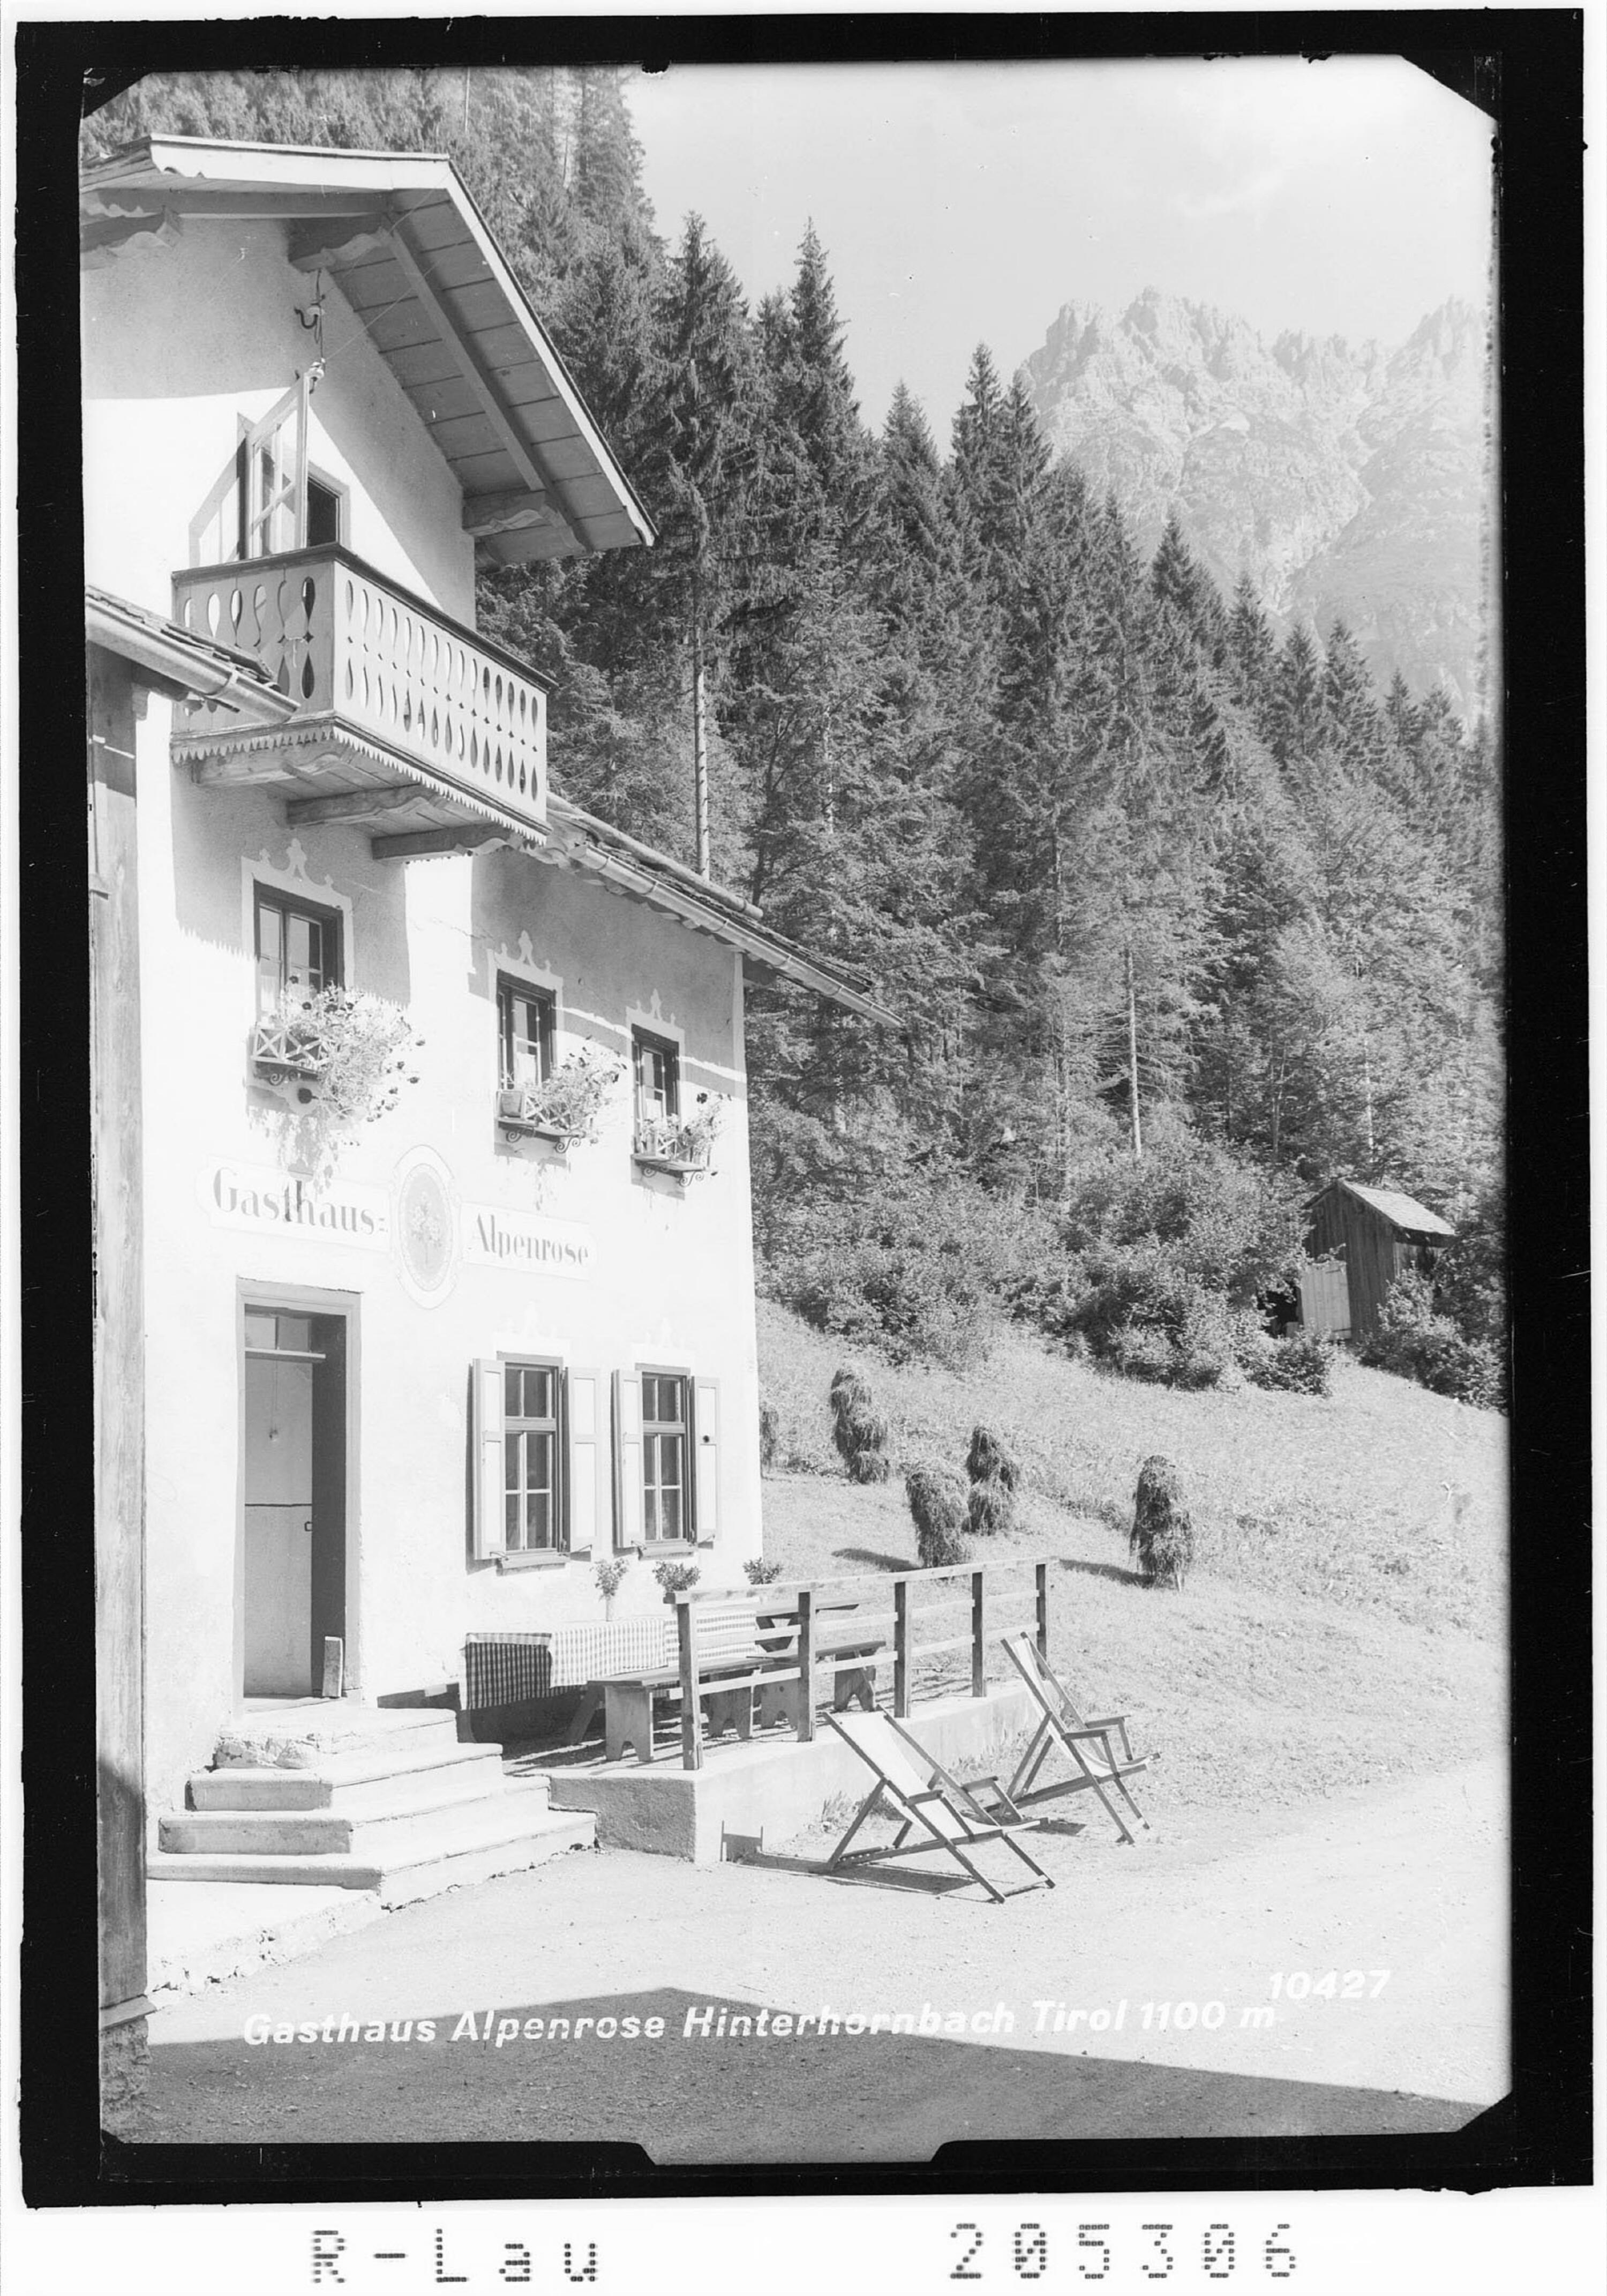 Gasthaus Alpenrose Hinterhornbach Tirol 1100 m></div>


    <hr>
    <div class=